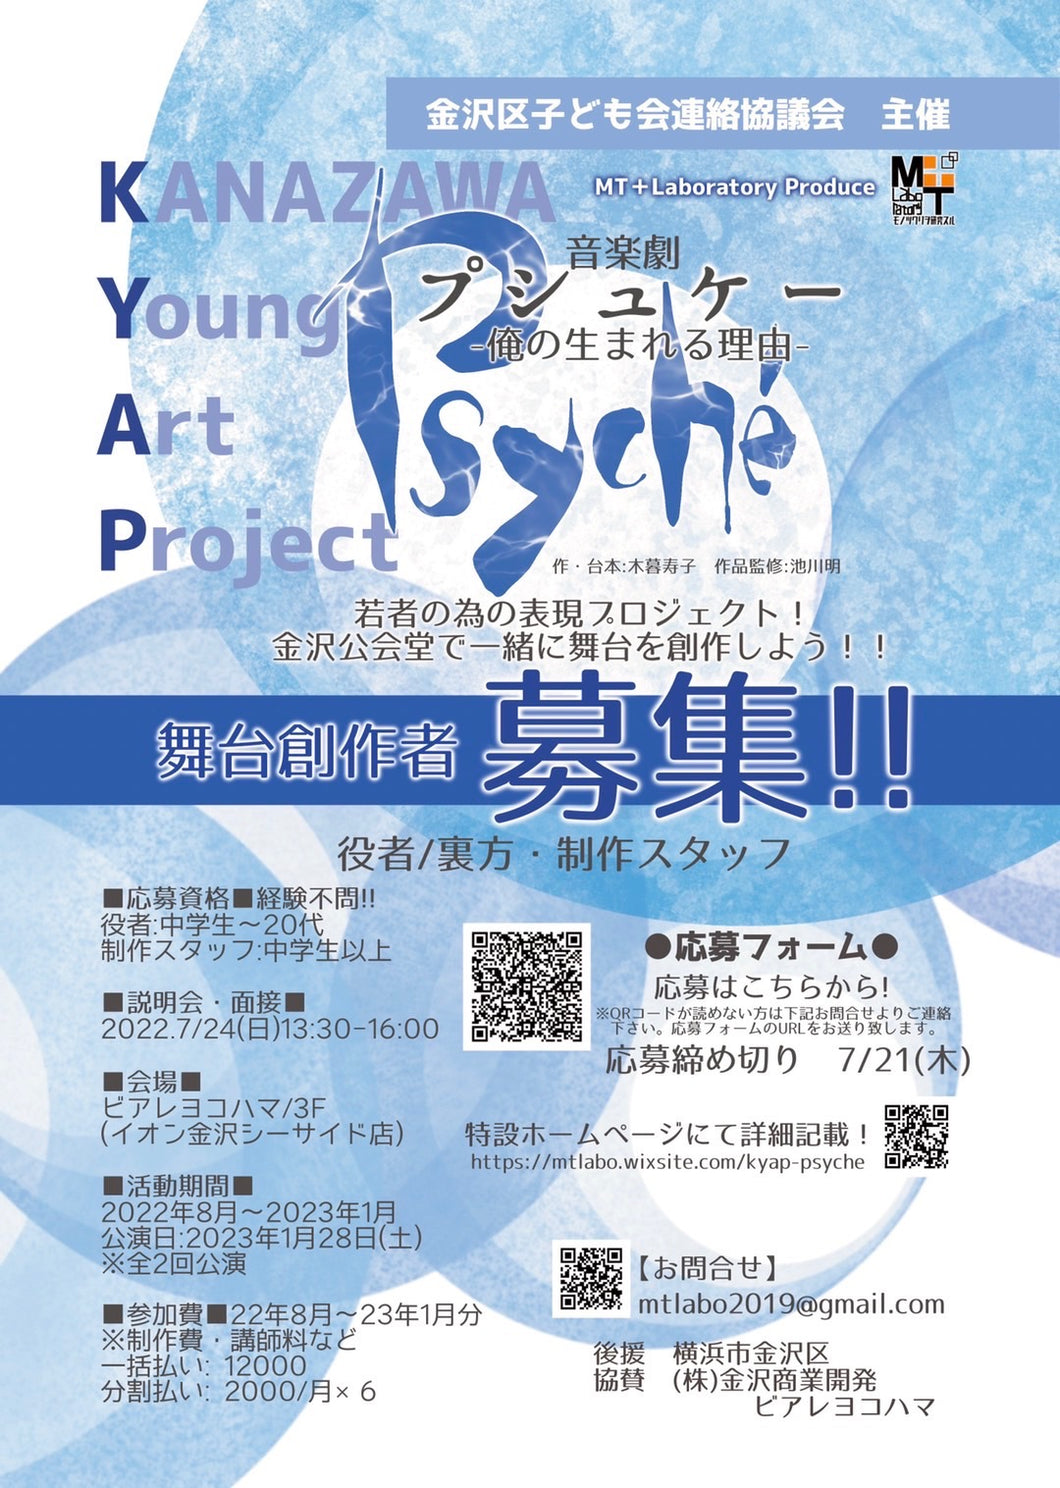 金沢区の新たな可能性！金沢公会堂で若者が本格的な舞台創作に挑む！　ＫＡＮＡＺＡＷＡ Young Art Project